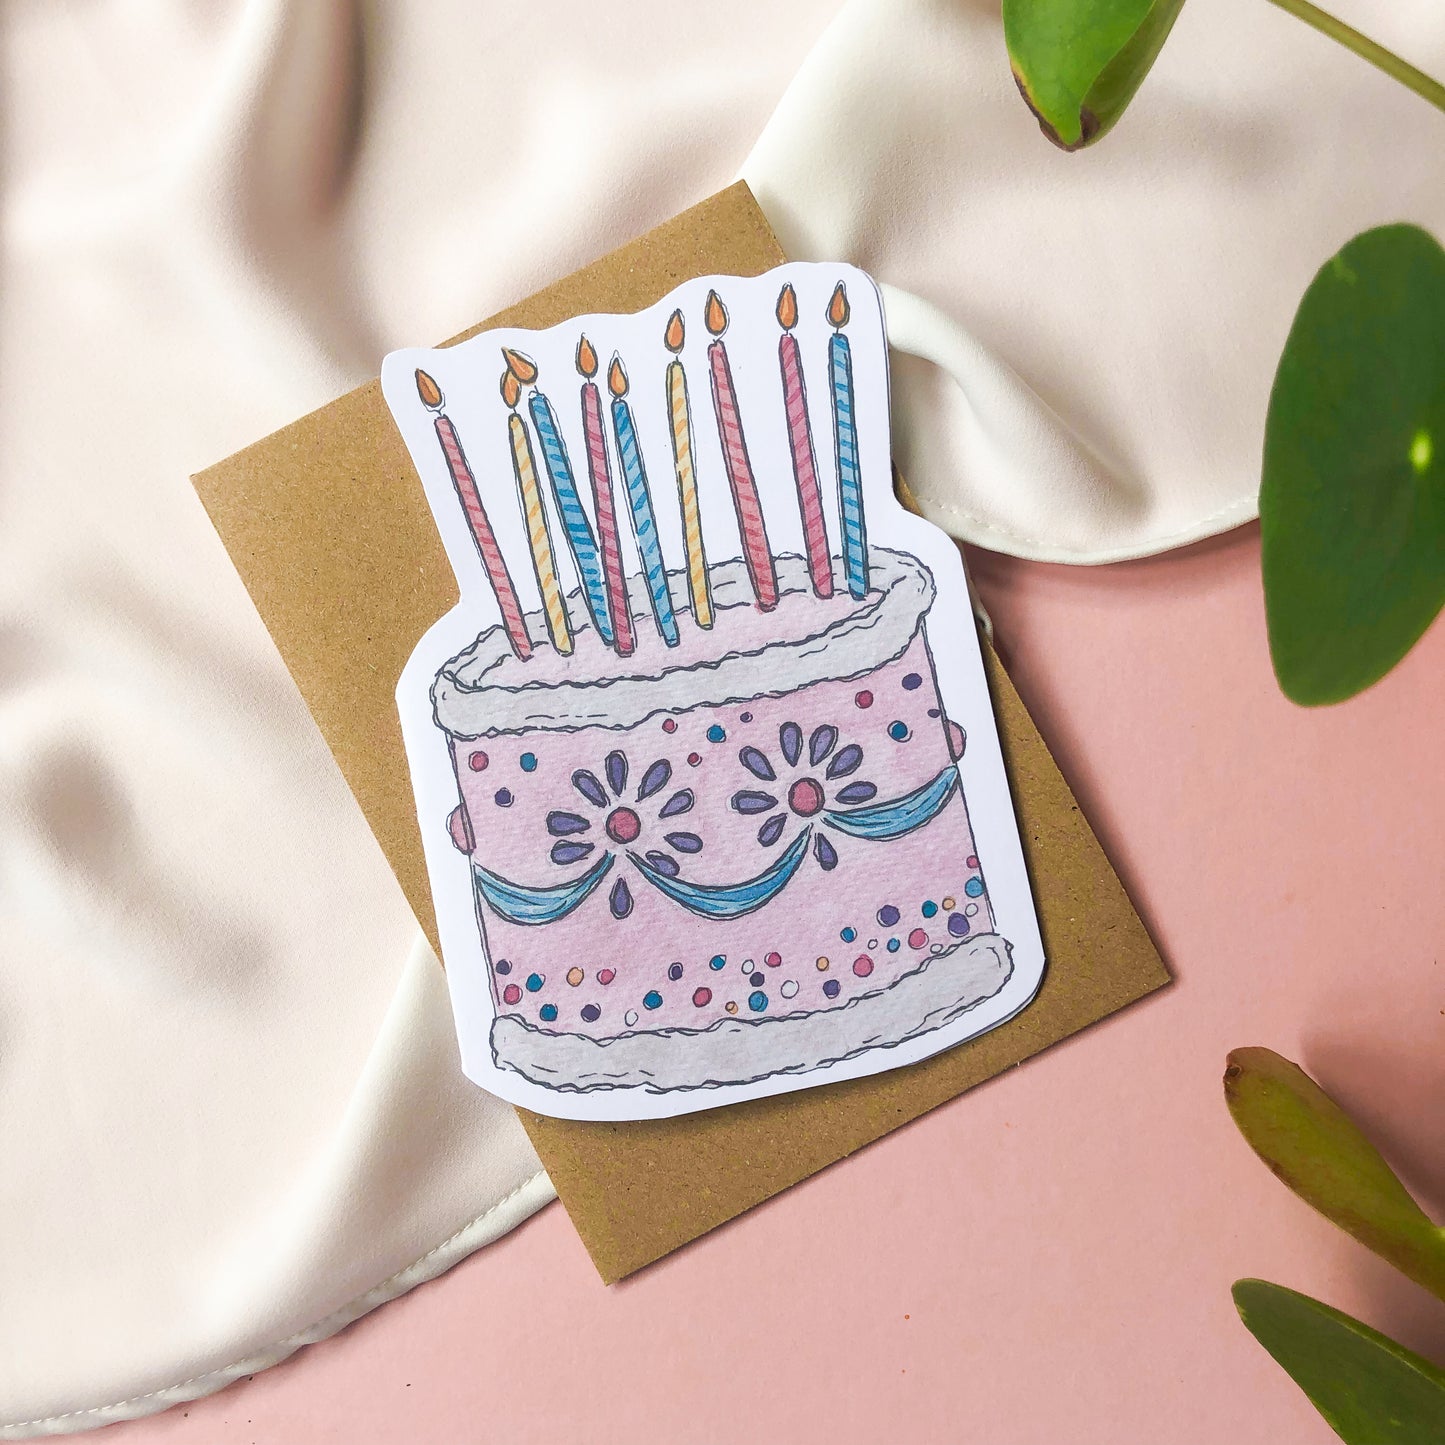 Pack of 3 Birthday Cards: Birthday Cake, Wishing You A Happy Birthday & Spring Flowers Happy Birthday